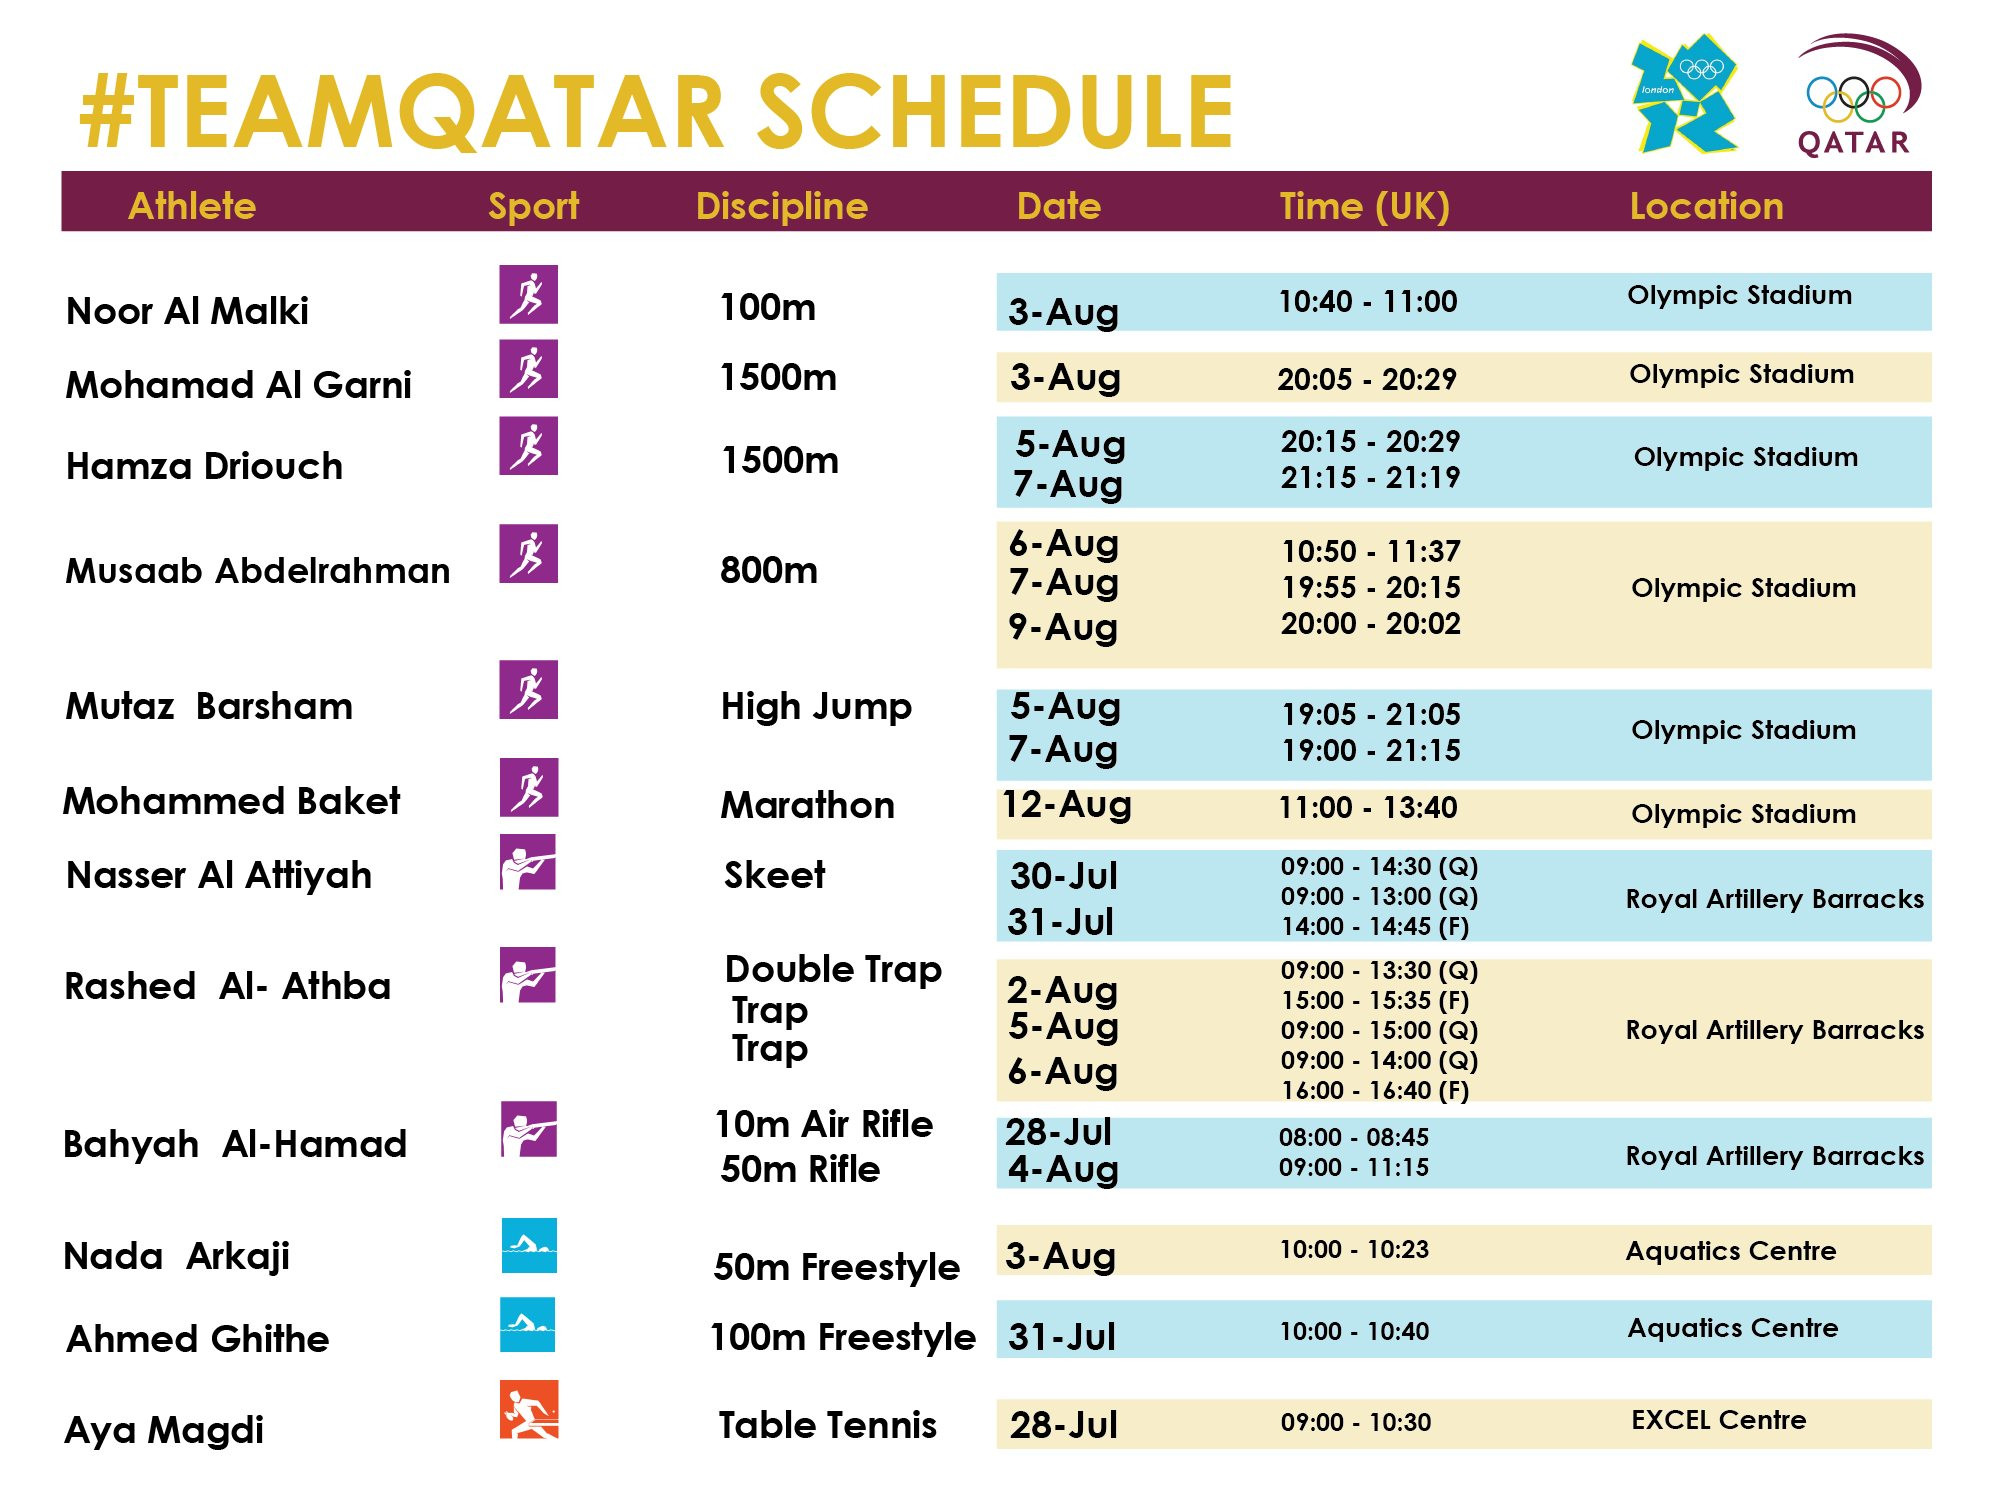 Team Qatar's Olympic Schedule Qatar Events